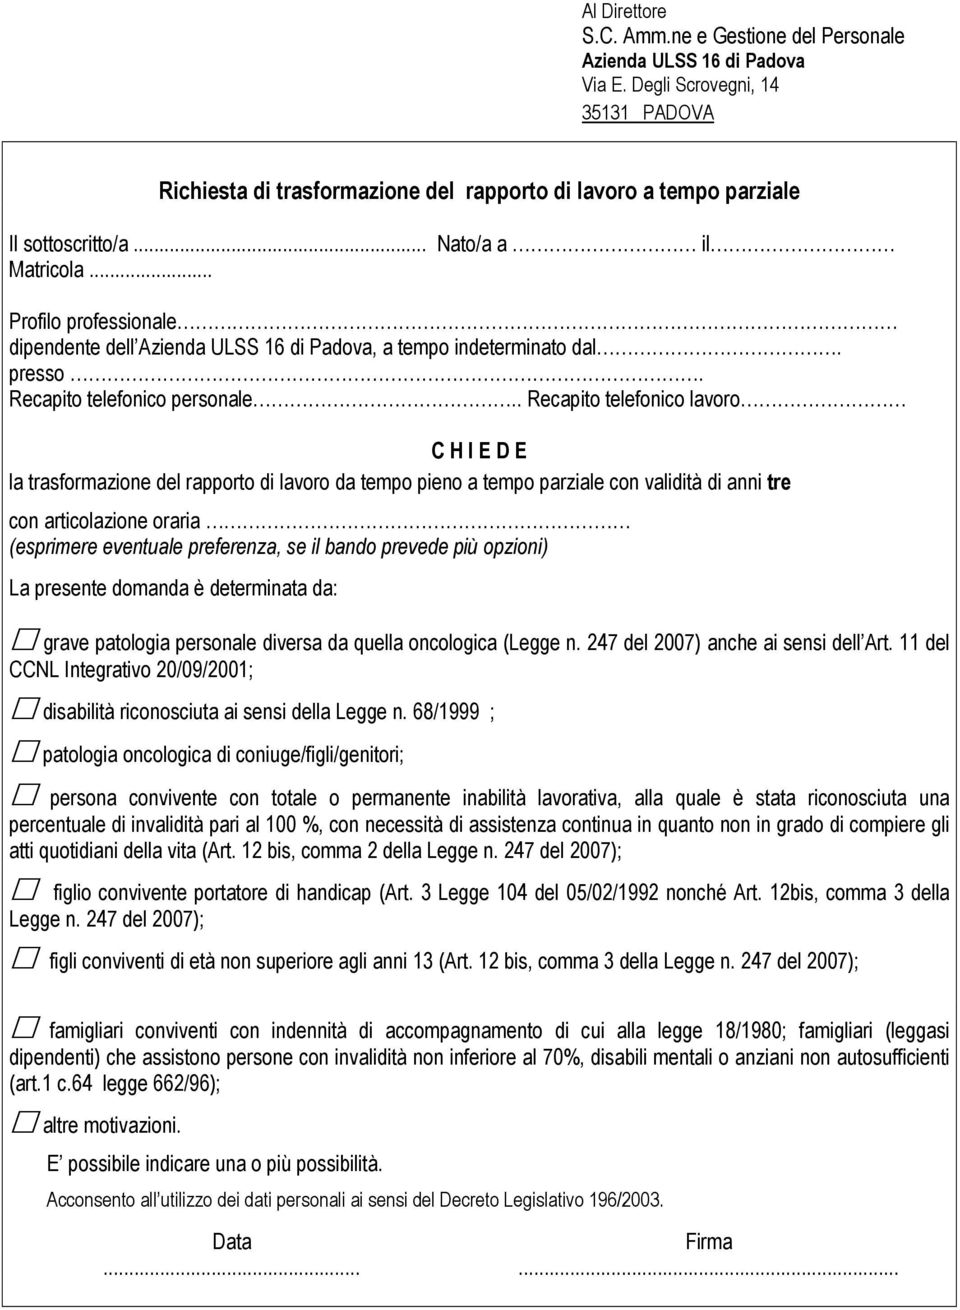 .. Profilo professionale dipendente dell Azienda ULSS 16 di Padova, a tempo indeterminato dal. presso. Recapito telefonico personale.